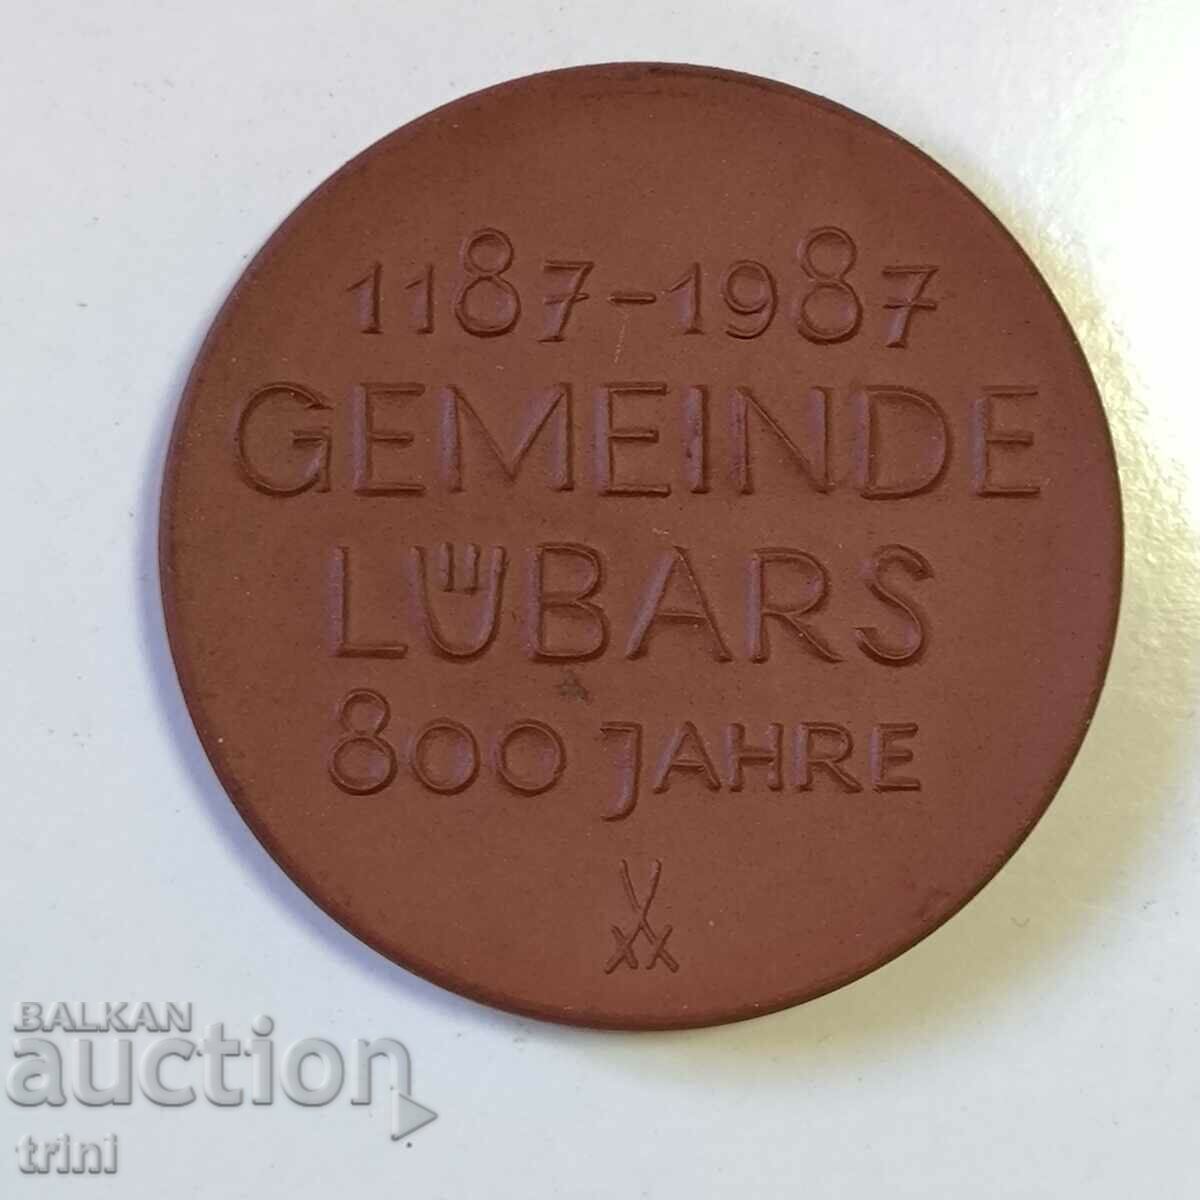 ΠΛΑΚΑ 800 χρόνια κοινότητα Lübars 1187-1987